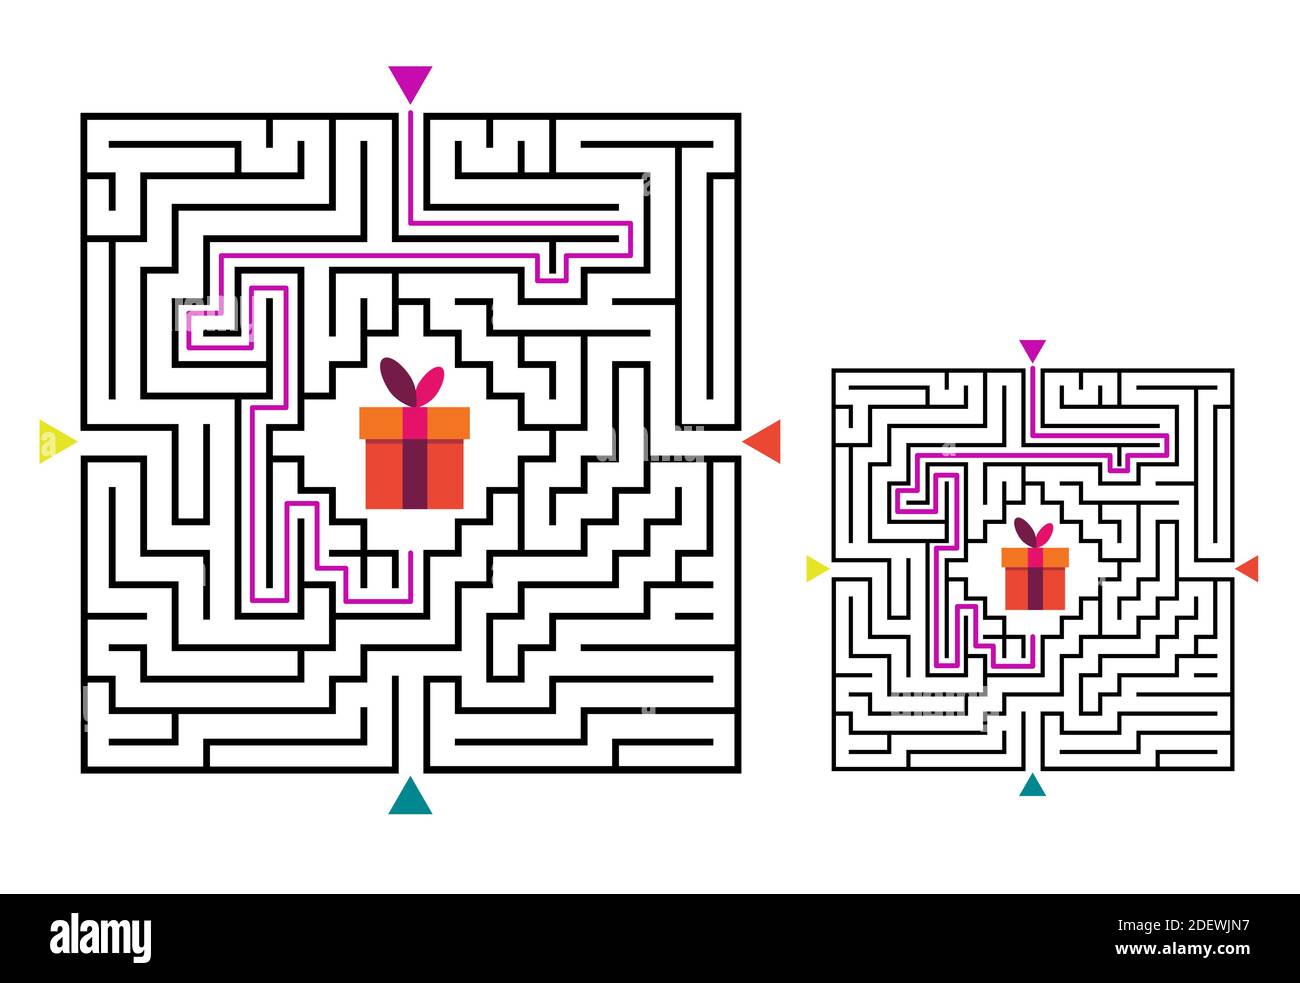 Labirinto quadrato gioco labirinto per bambini. Logica labirintica. Quattro ingressi e una strada a destra per andare. Immagine piatta vettoriale Illustrazione Vettoriale